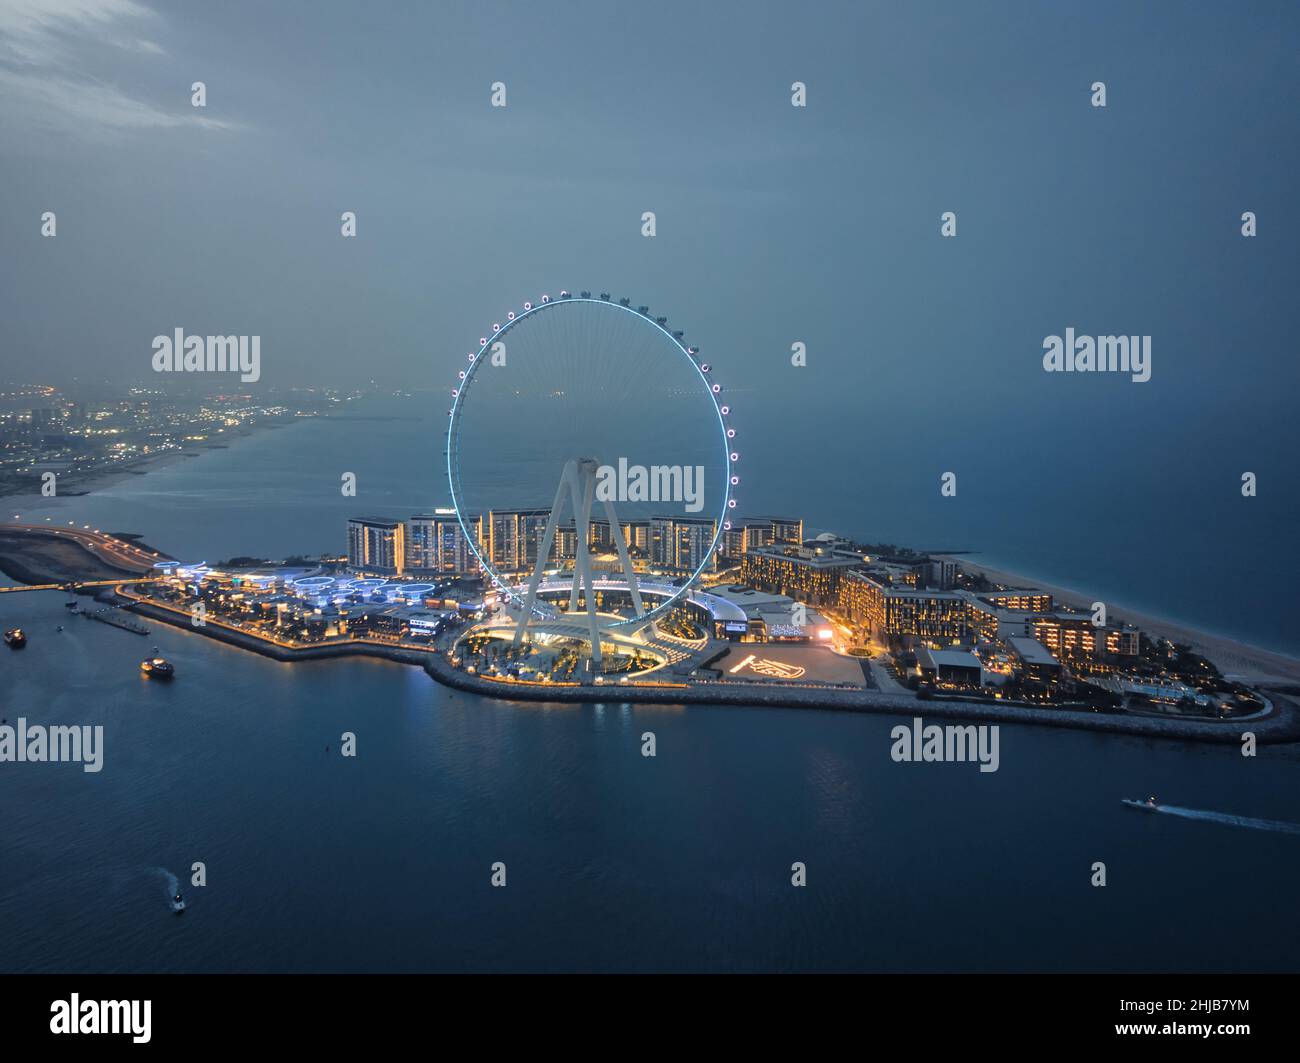 Ain Dubai, la plus grande roue de ferris au monde sur l'île Bluewaters à Dubai Marina illuminée dans le ciel nocturne ; vue aérienne des principales destinations de dubaï Banque D'Images